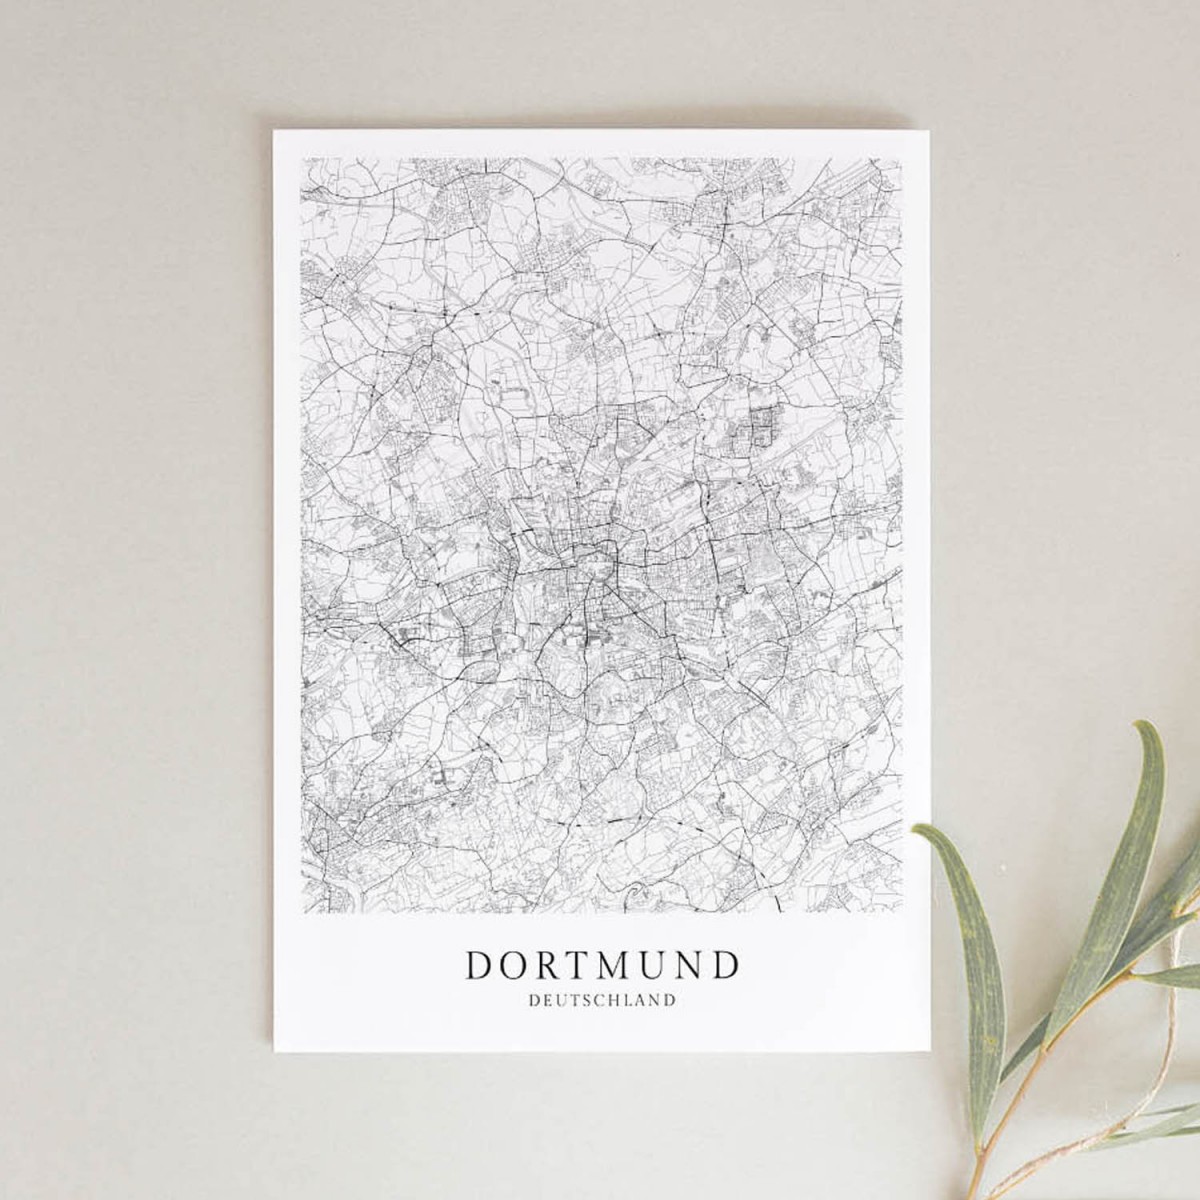 Dortmund als hochwertiges Poster im skandinavischen Stil von Skanemarie